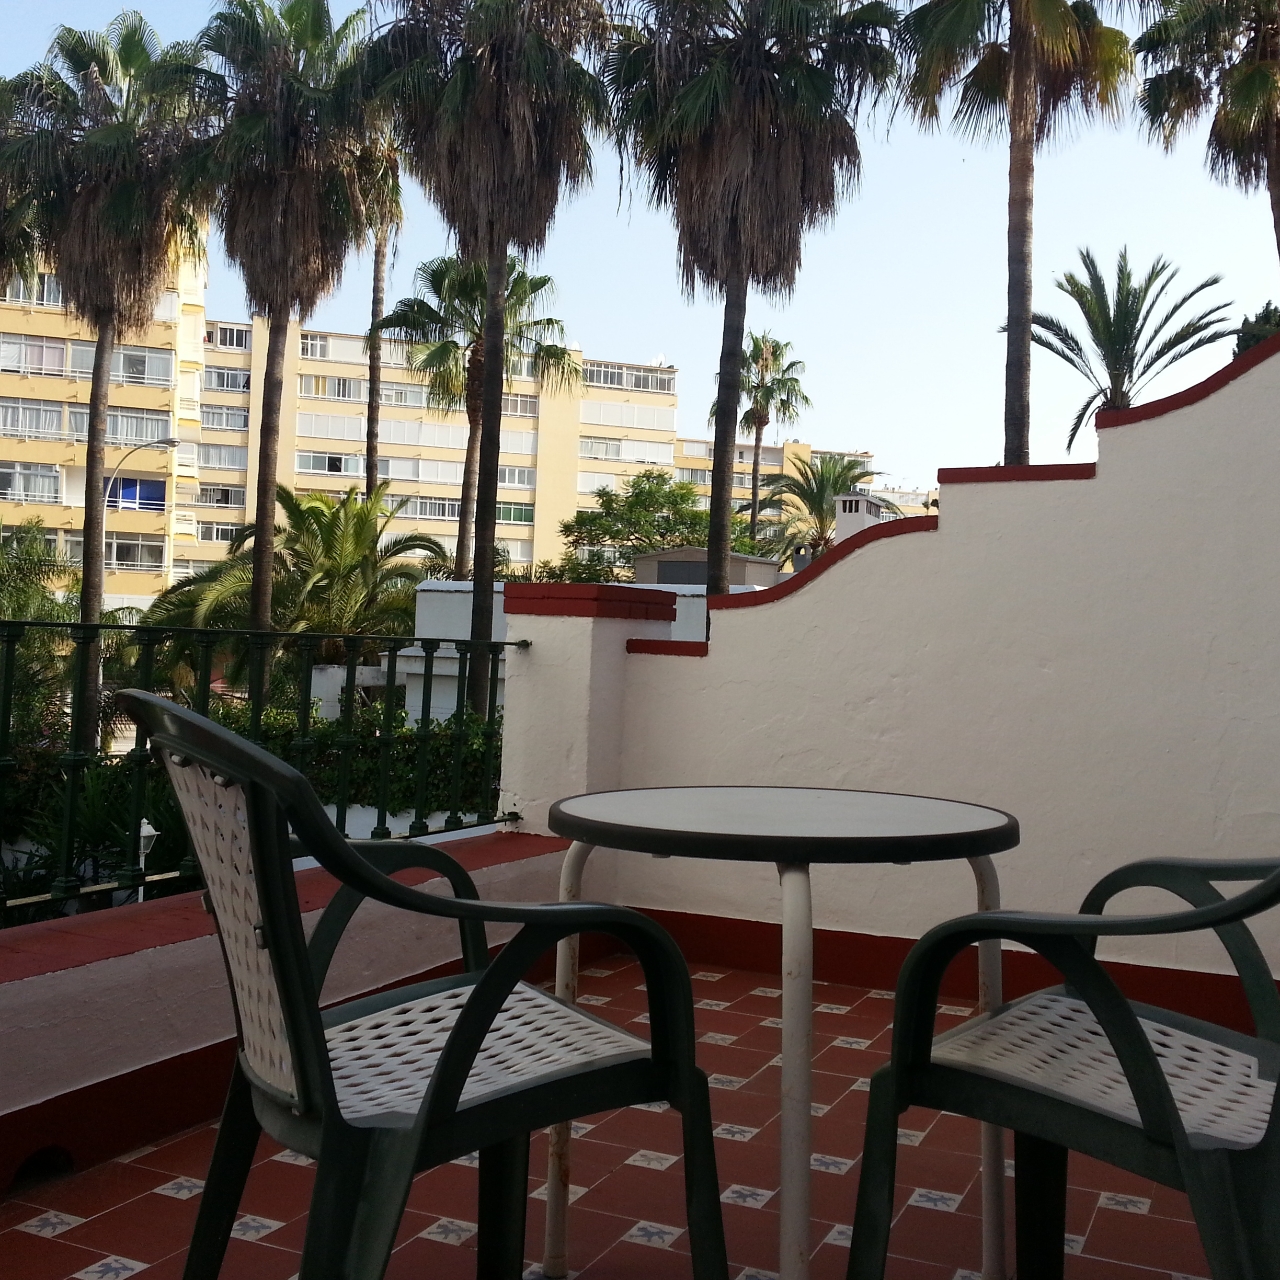 Hotel Arcos de Montemar - Torremolinos chez HRS avec services gratuits